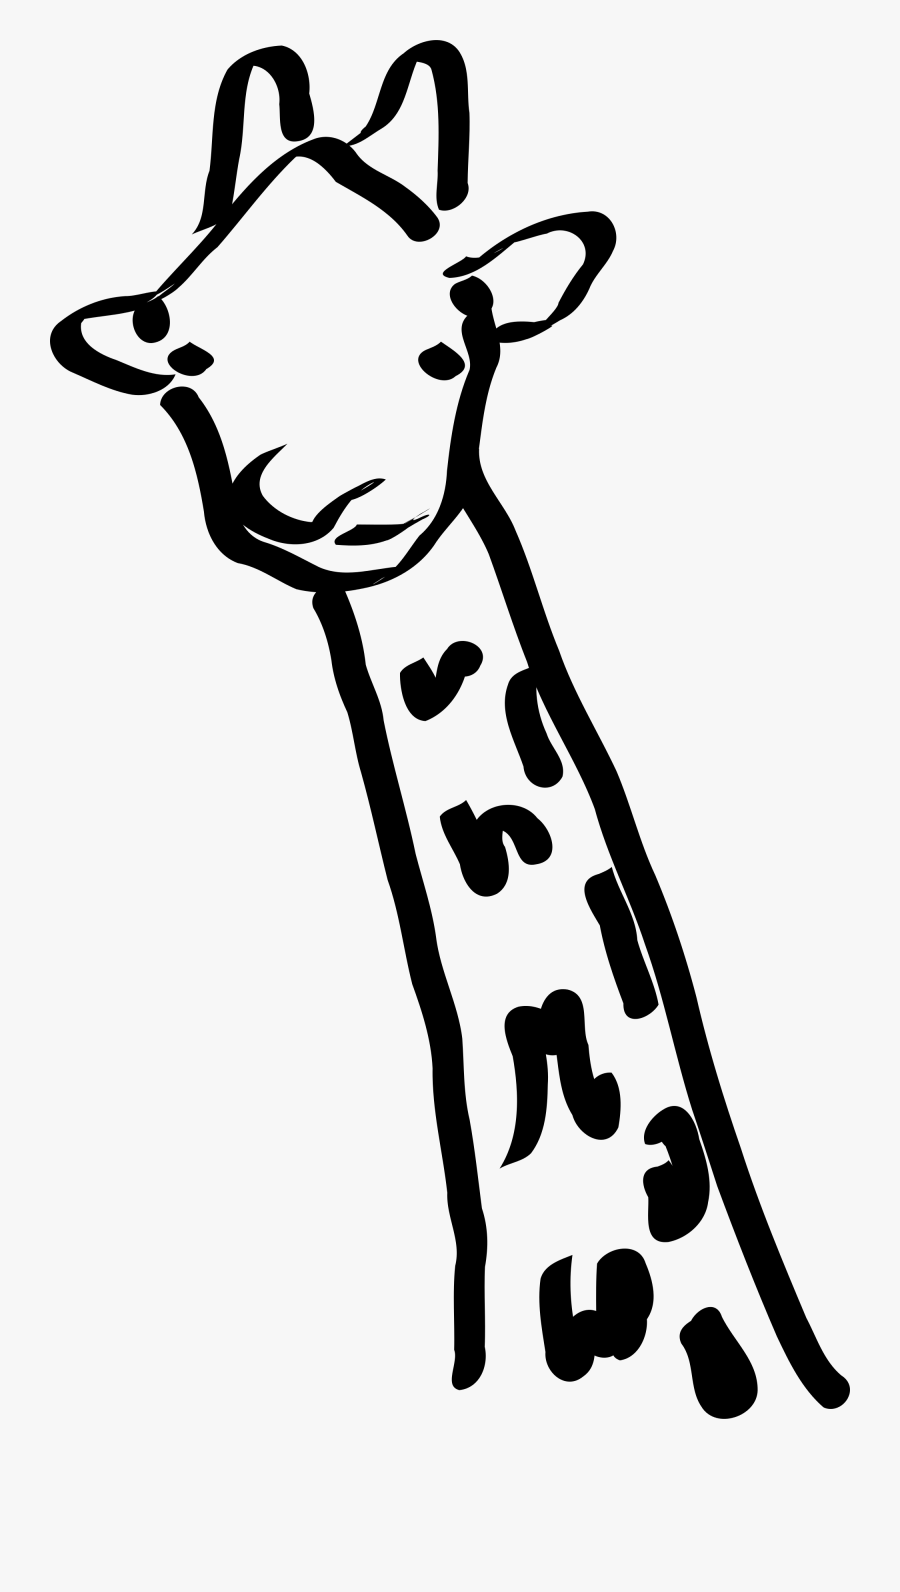 Giraffe Clipart School - Giraffe Neck And Head Drawing, Transparent Clipart